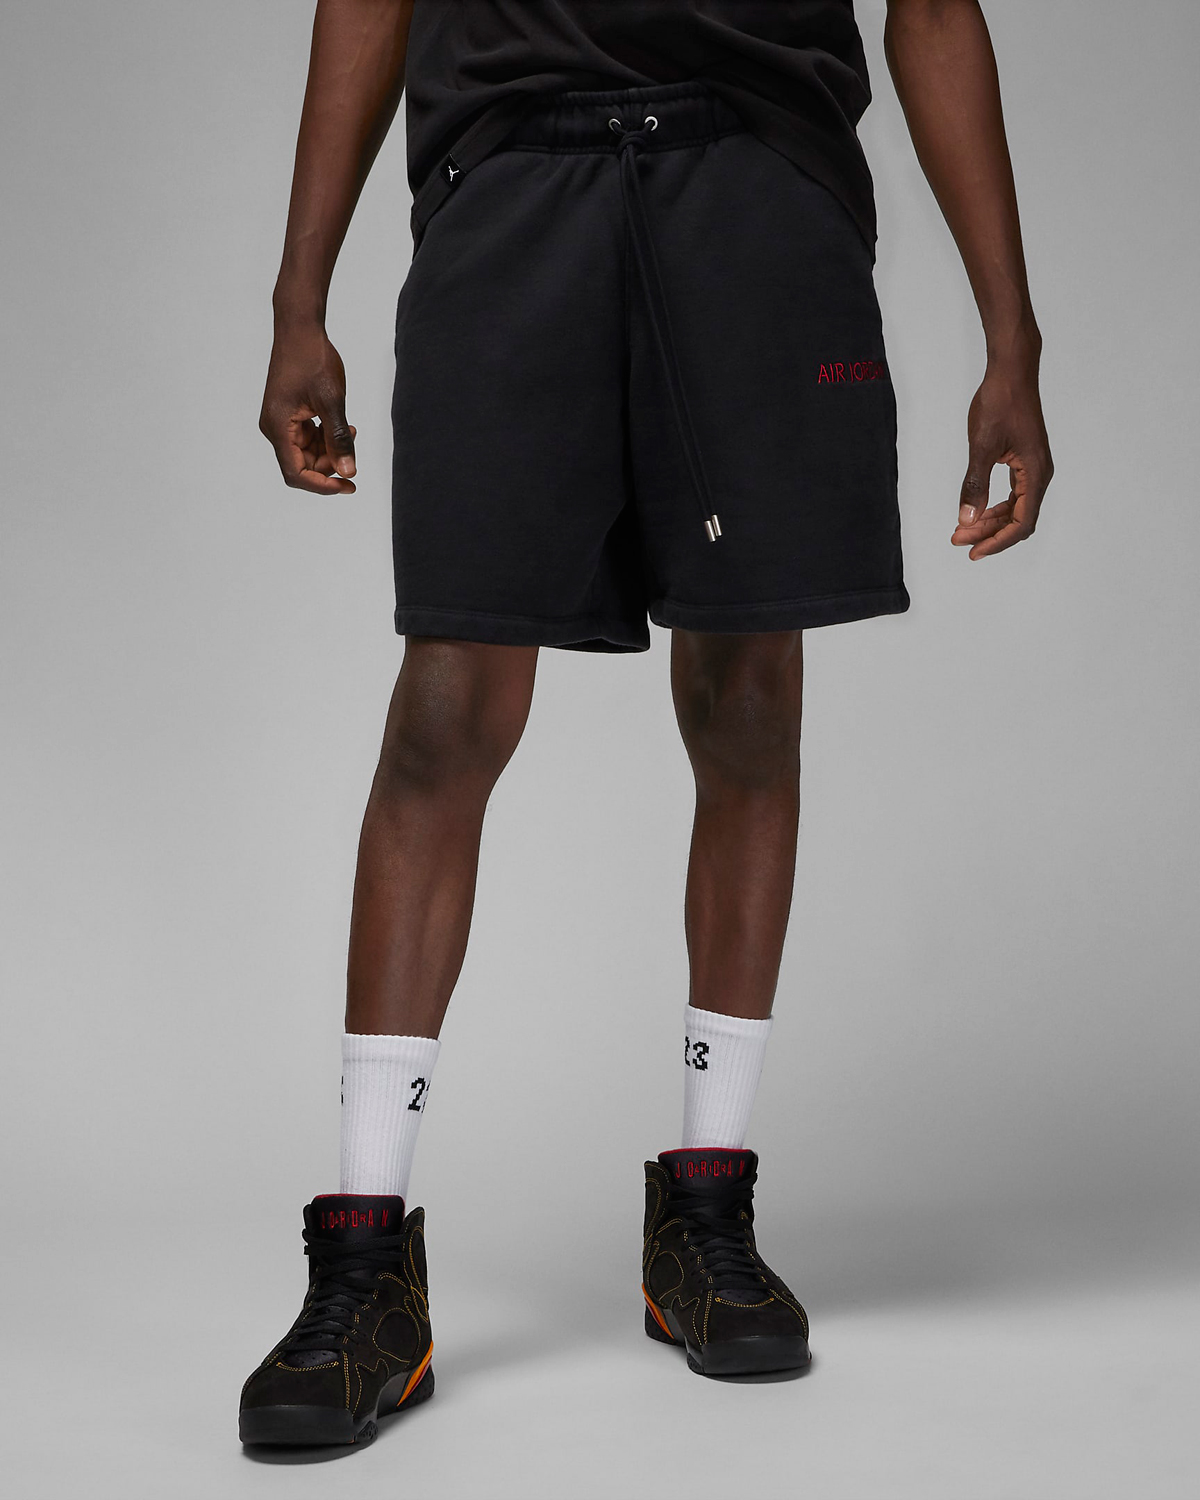 Air Jordan Wordmark Shirt Hoodie and Shorts in Black Gym Red